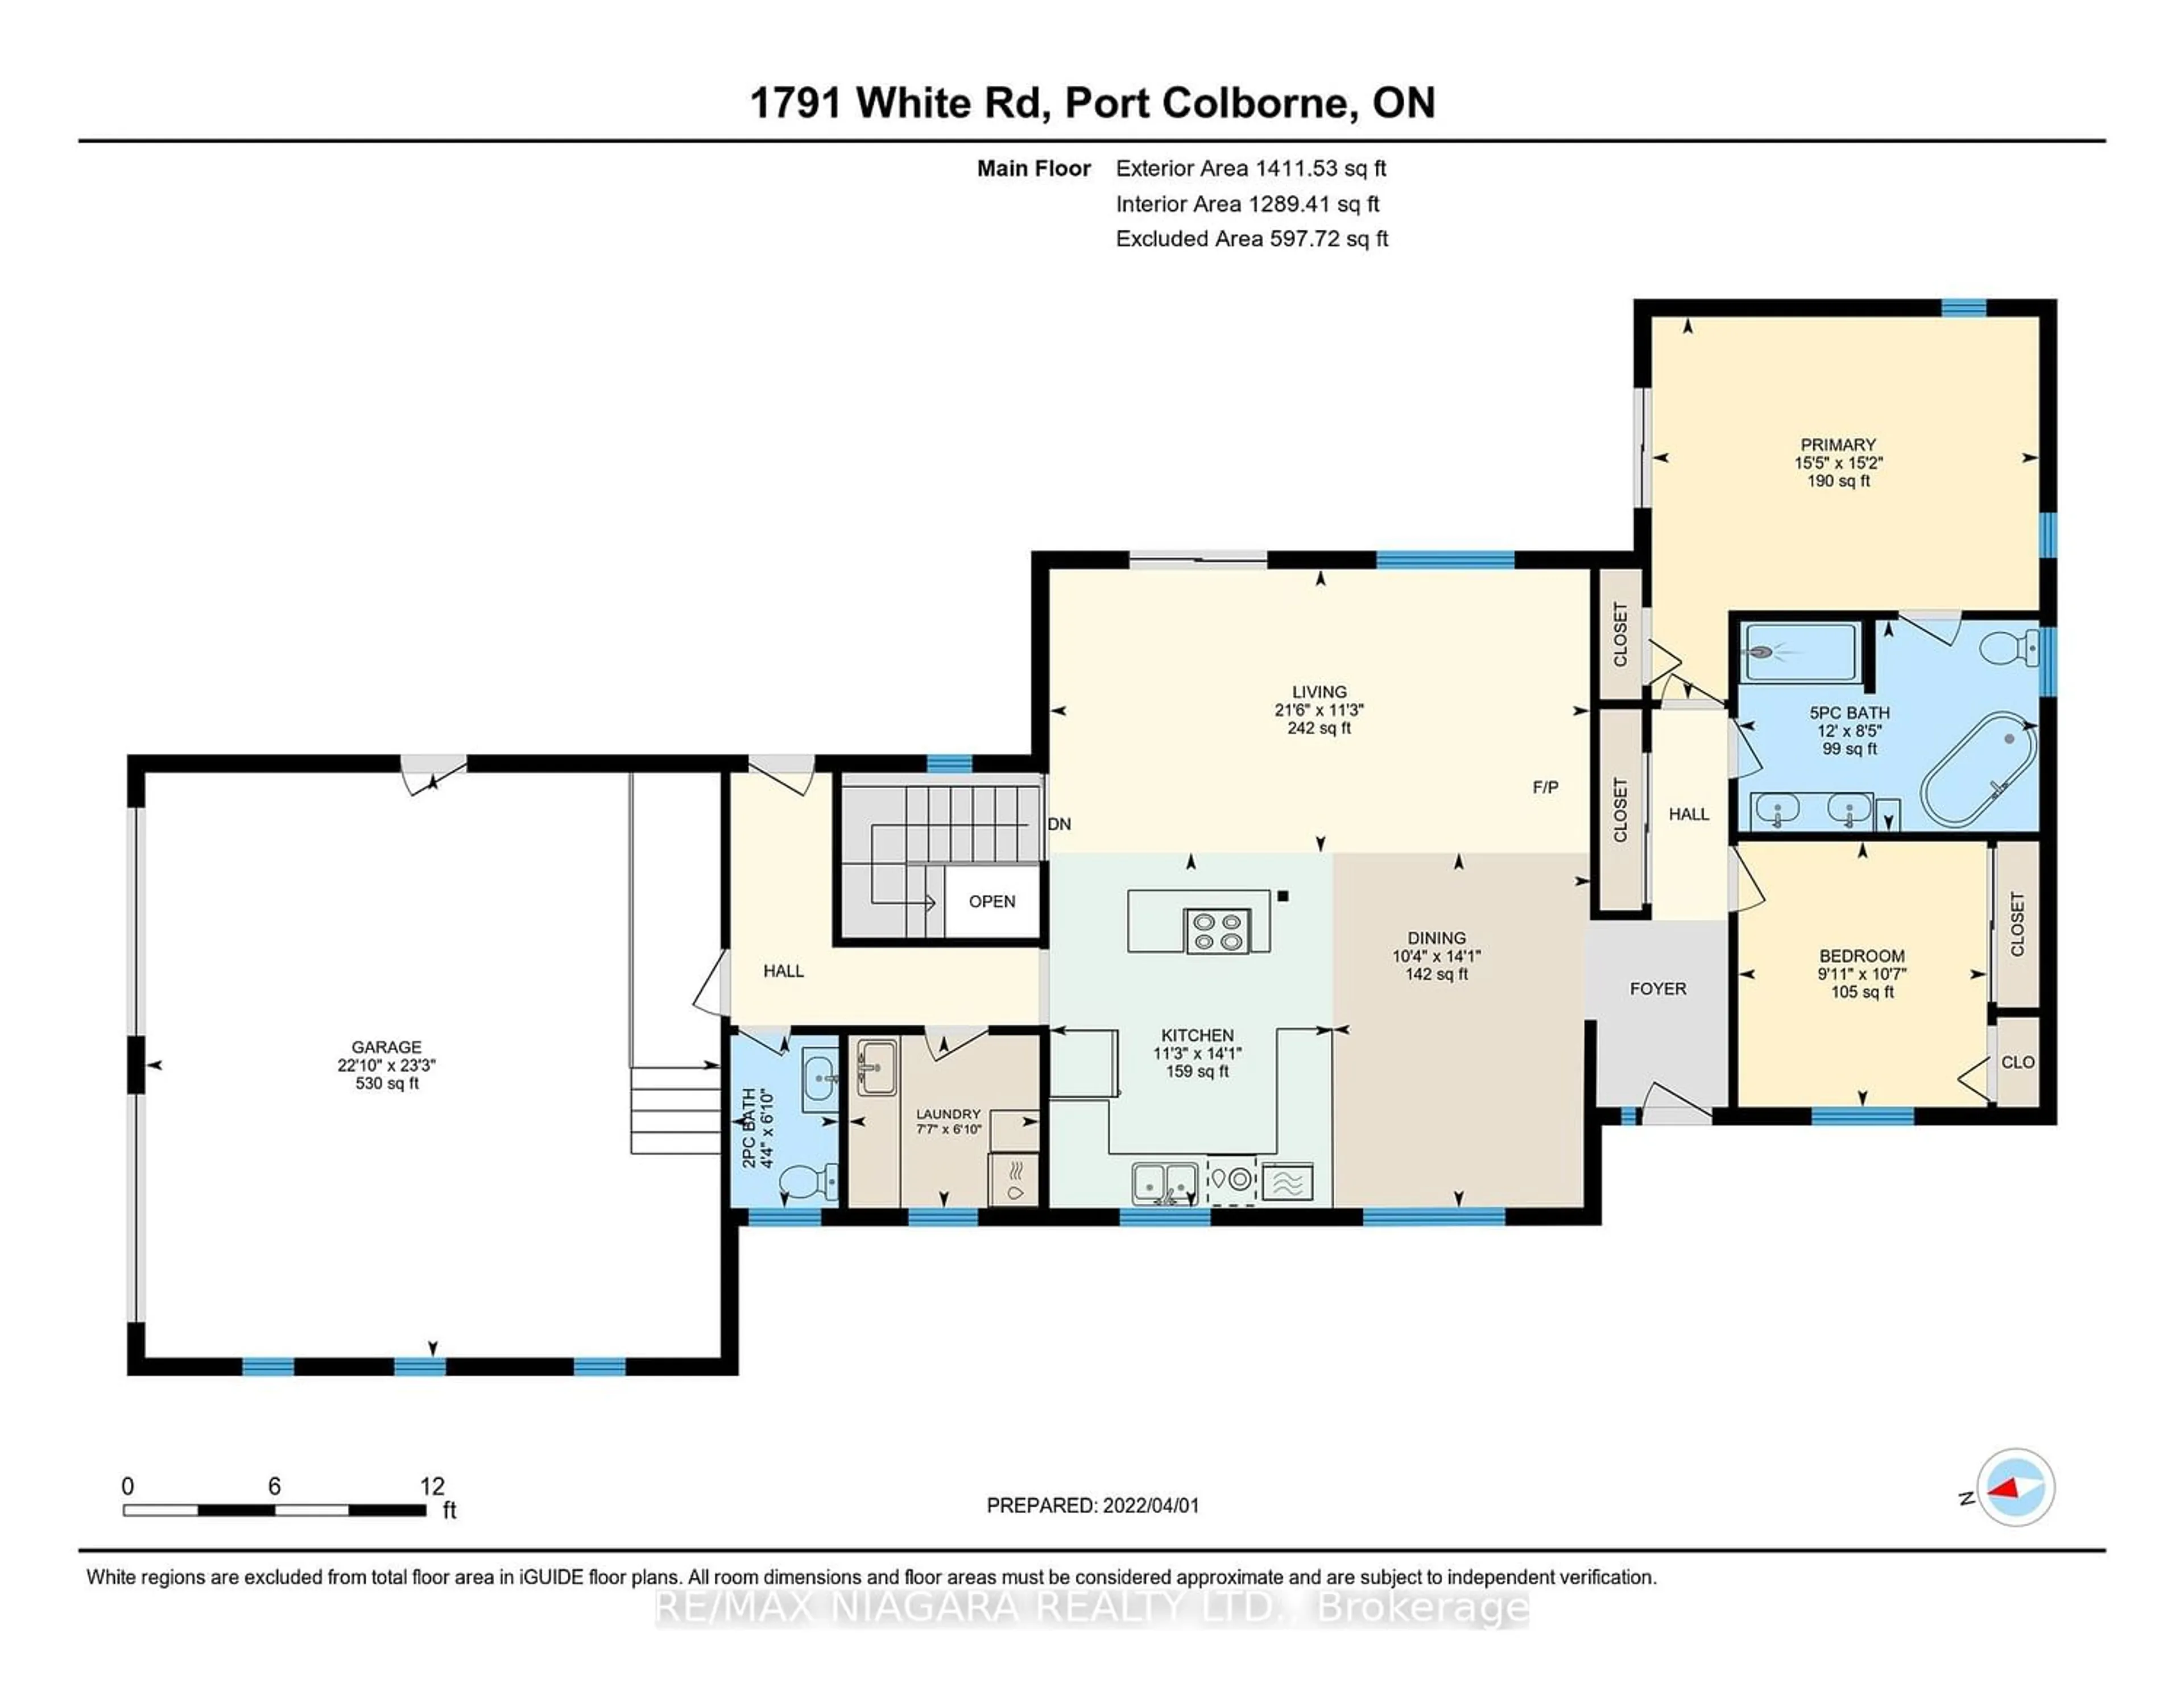 Floor plan for 1791 White Rd, Port Colborne Ontario L3K 5V3